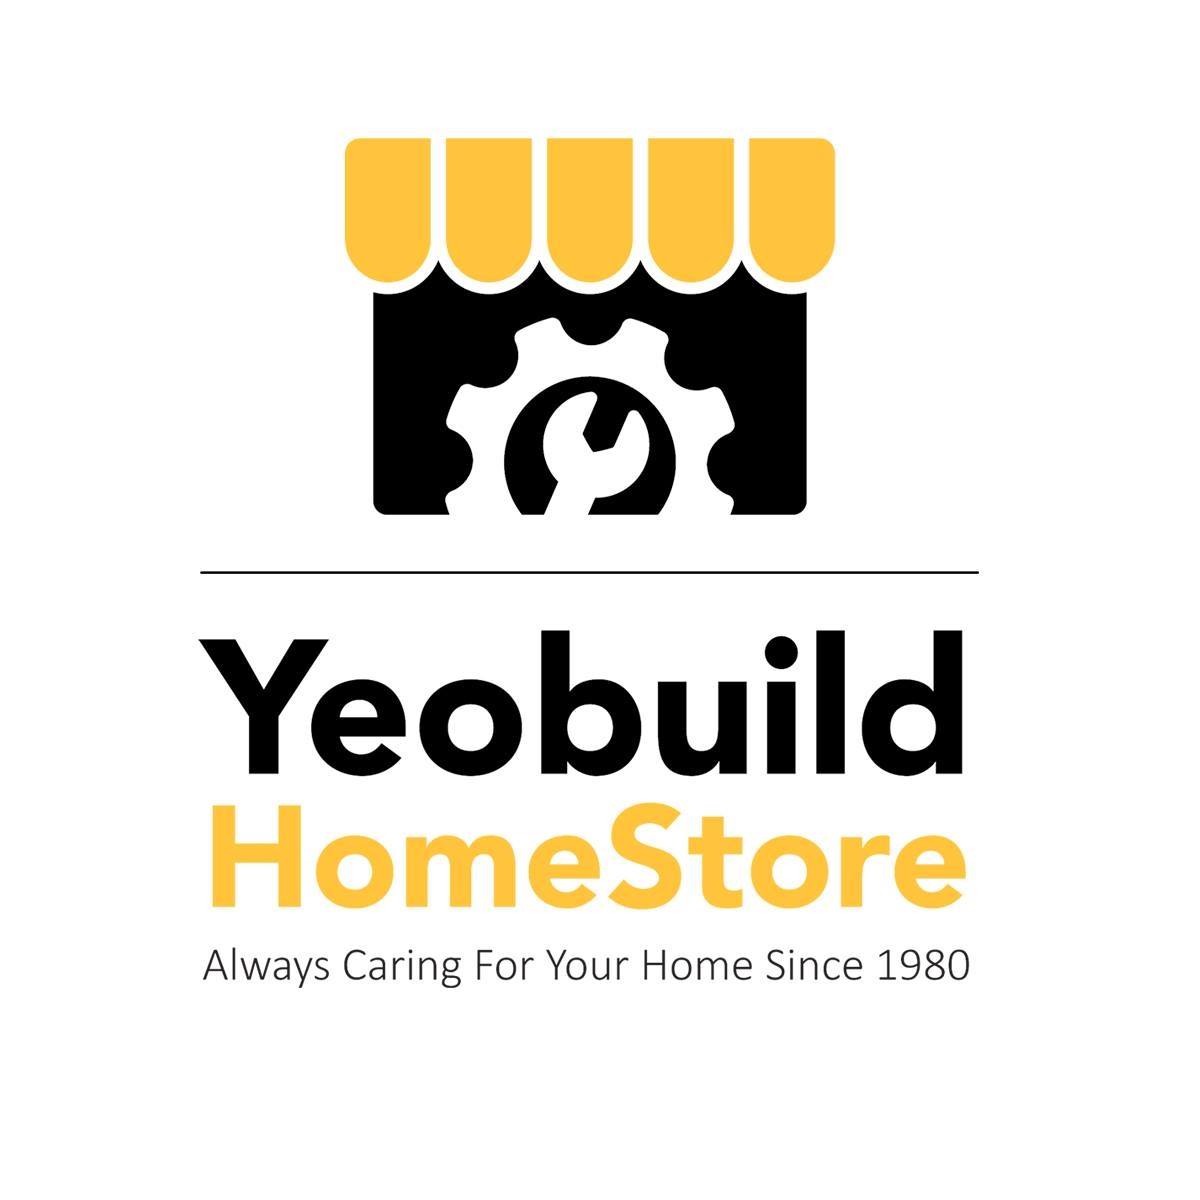 Yeobuild HomeStore